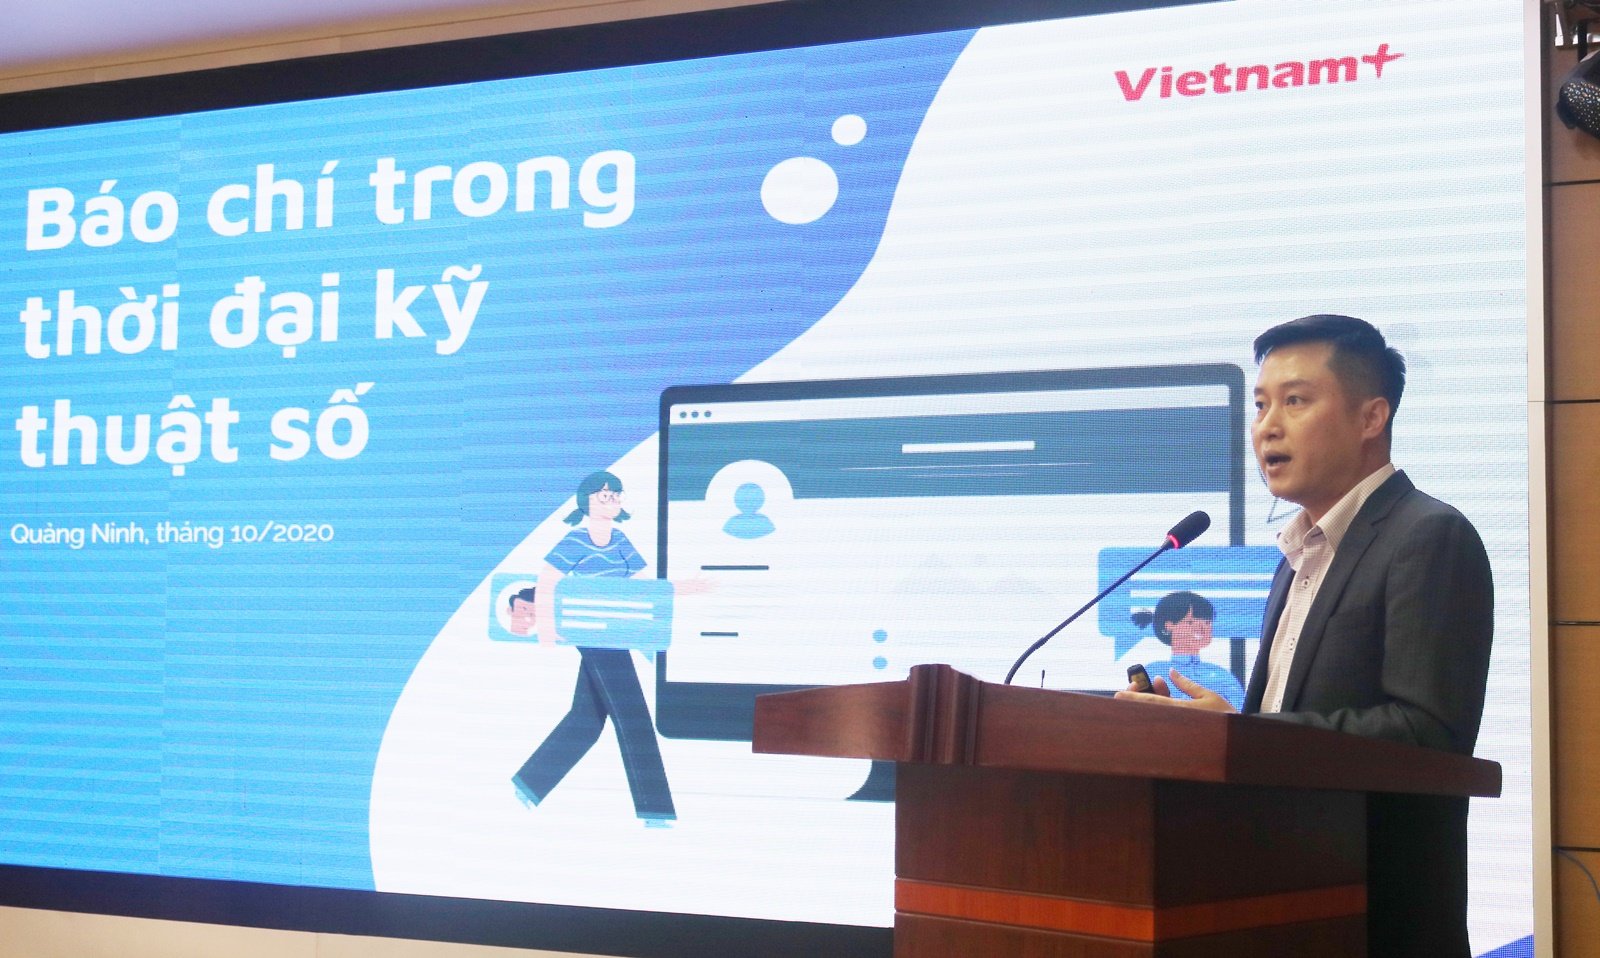 Nhà báo Nguyễn Hoàng Nhật, Phó Tổng biên tập báo điện tử Vietnamplus chia sẻ những thông tin cập nhật mới nhất về truyền thông số và những tác động đến sự phát triển của báo chí.